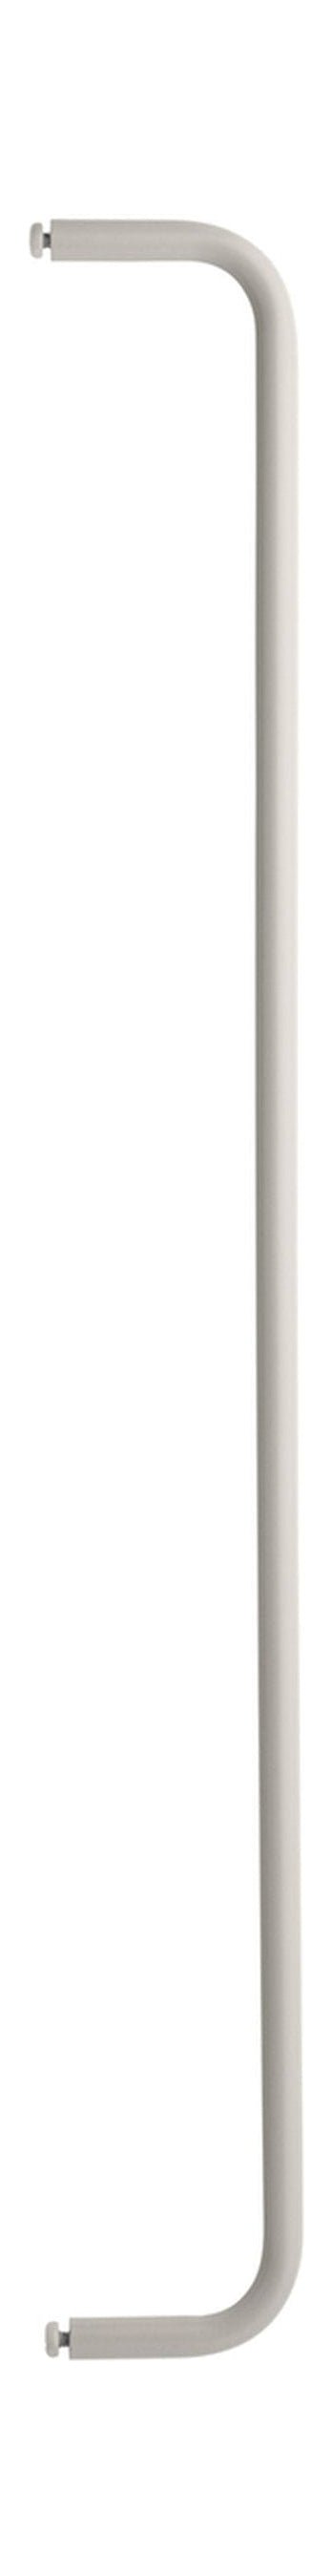 Meble sznurkowe System Ubrania szyna do szelfu metalowego 78 cm, beż